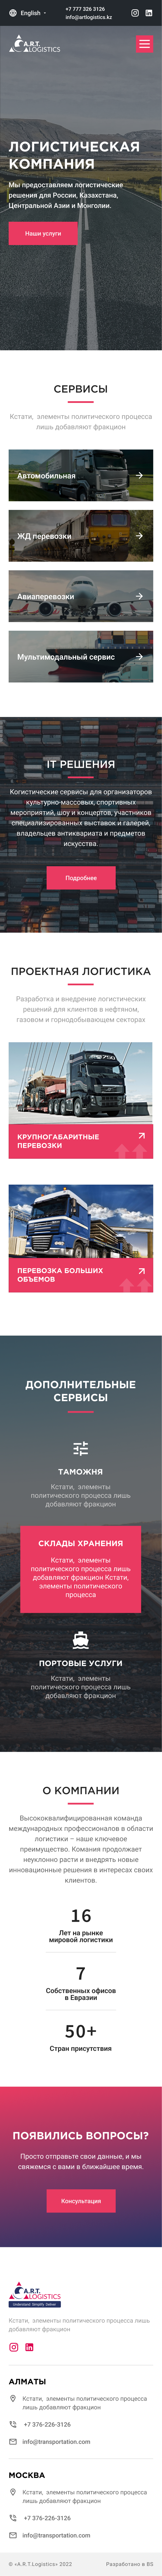 Дизайн сайта A.R.T. Logistics для мобильных устройств